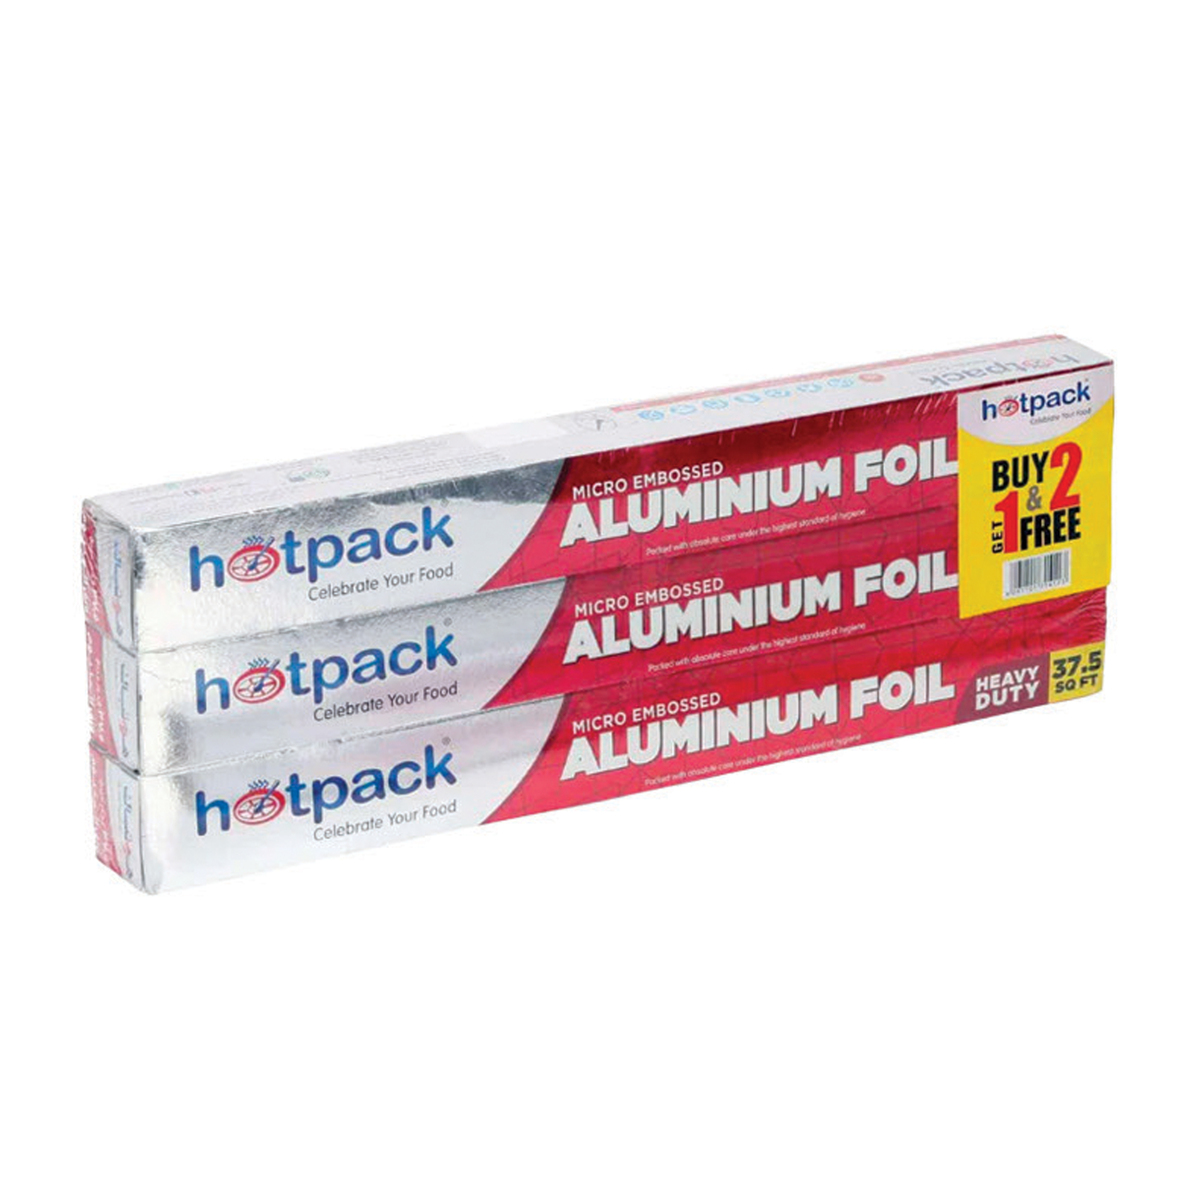 Hotpack Aluminium foil 37.5sqft 2+1